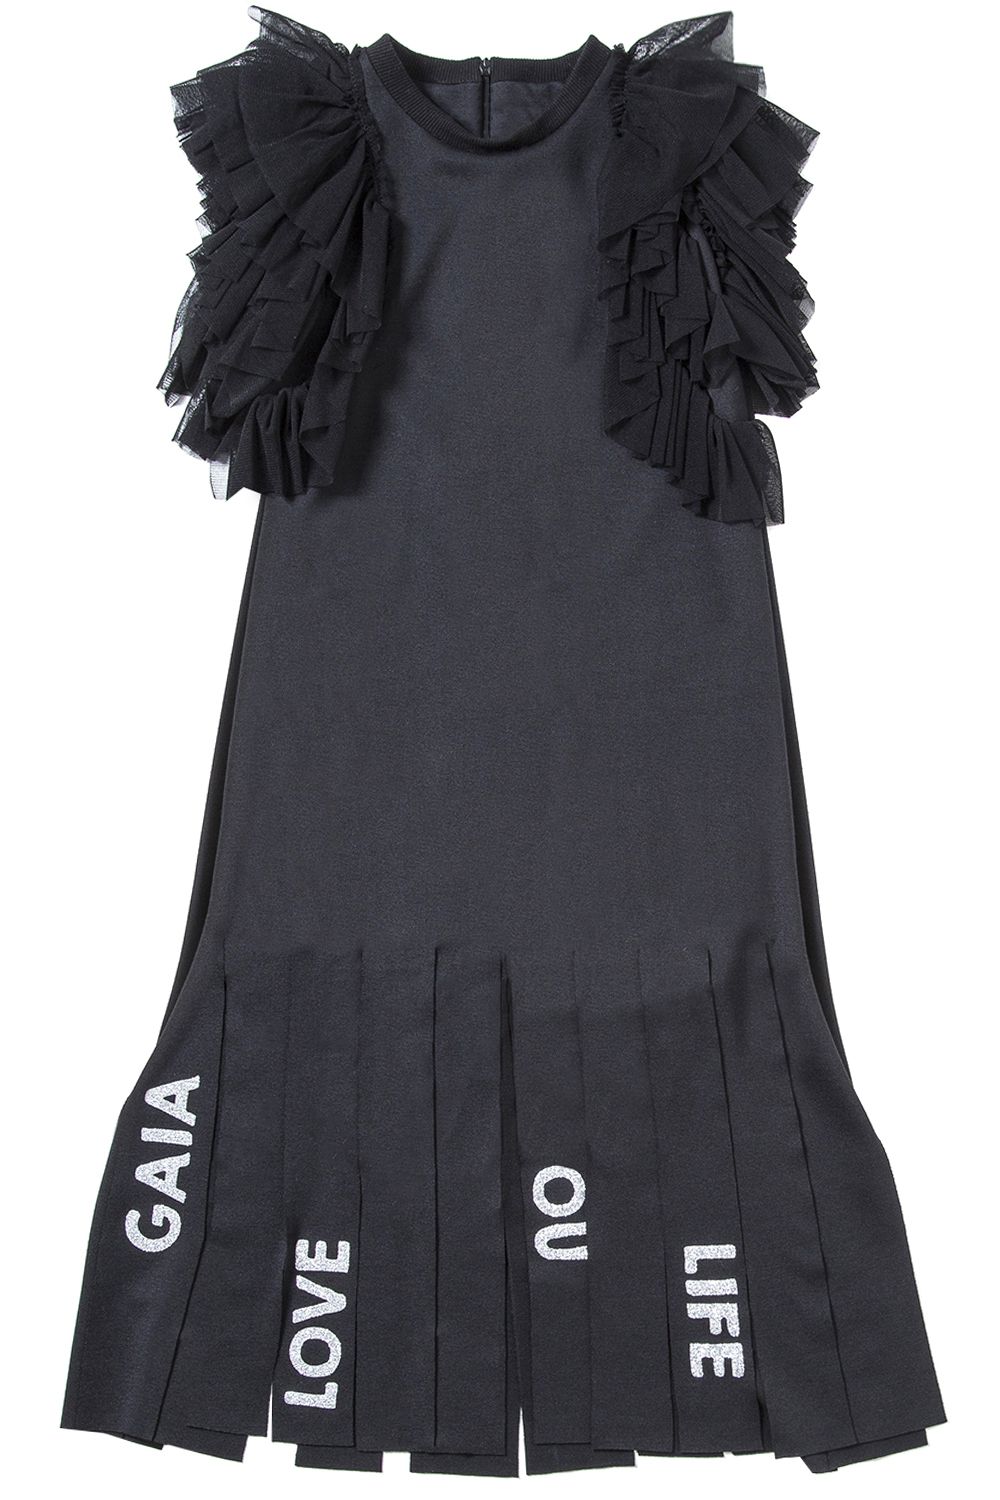 Платье Gaialuna, размер 158, цвет черный G1726 - фото 1